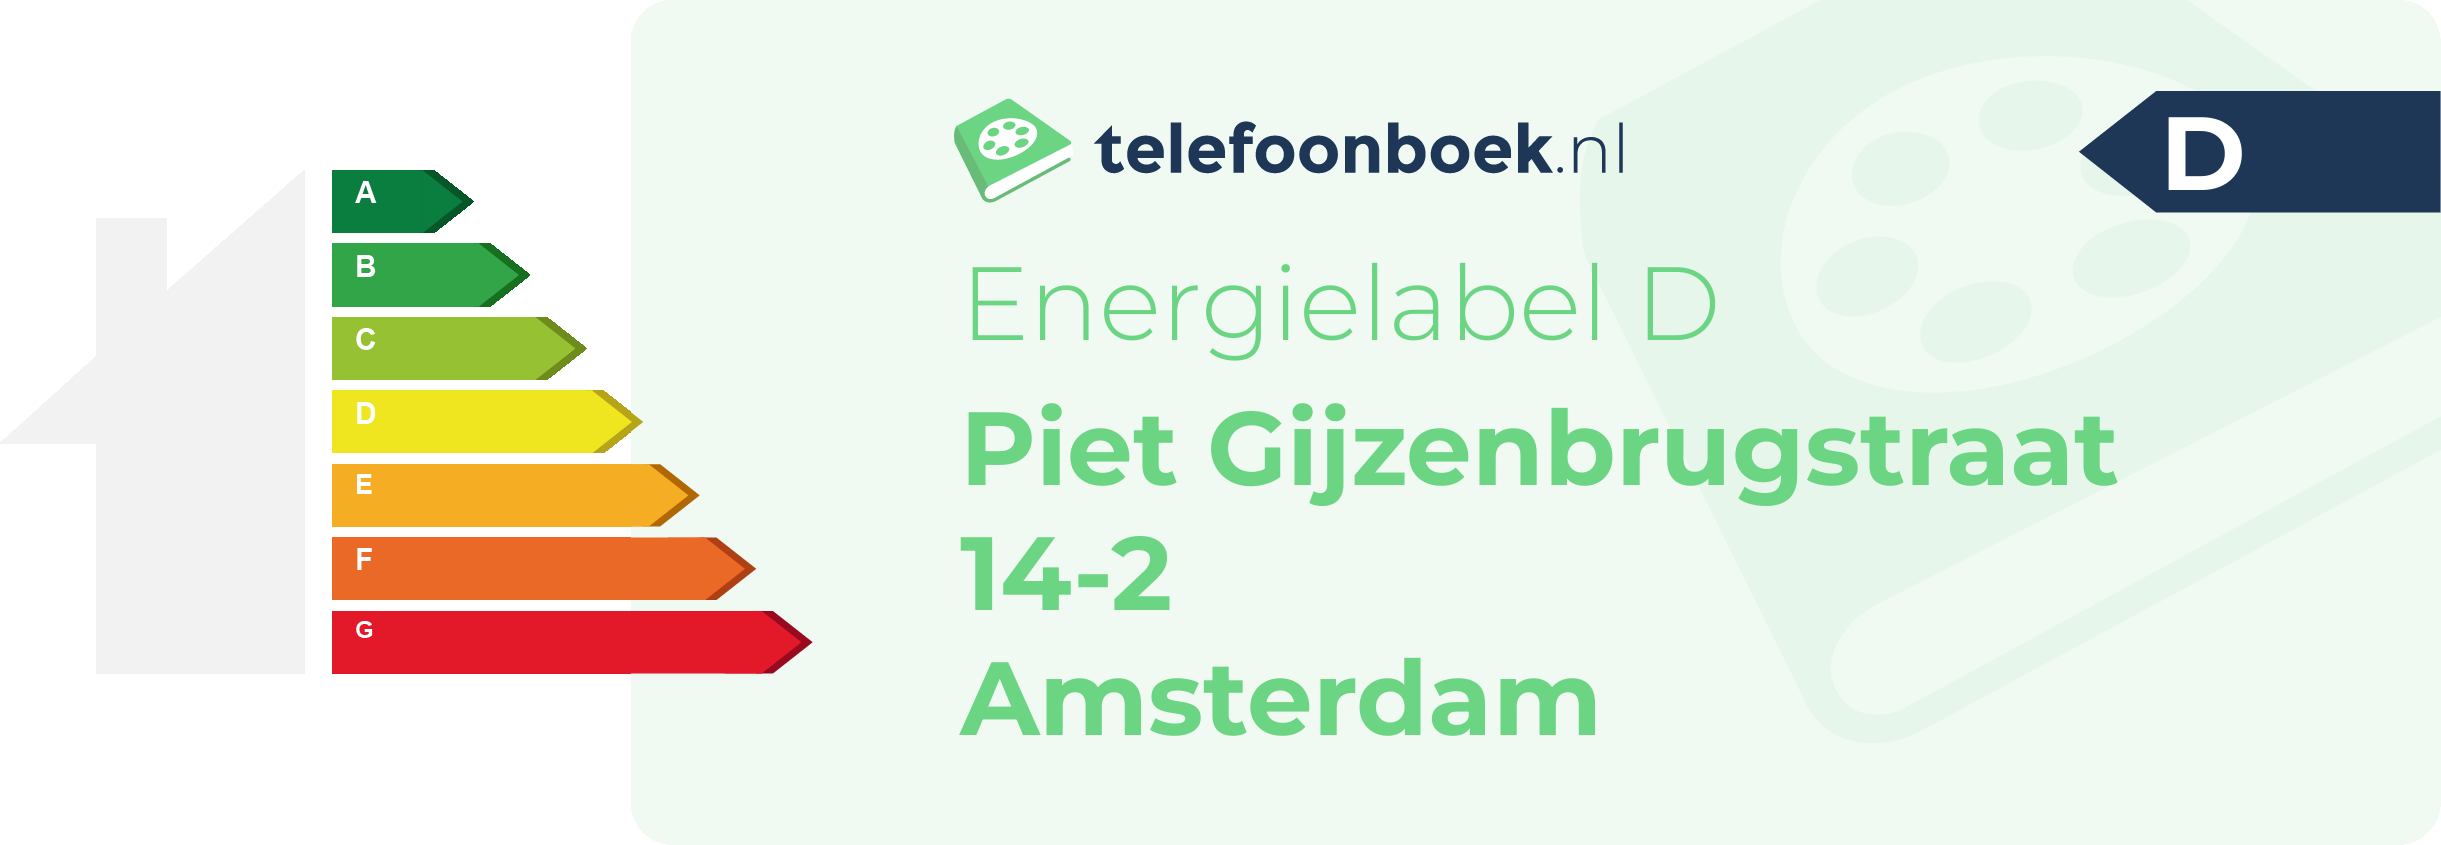 Energielabel Piet Gijzenbrugstraat 14-2 Amsterdam